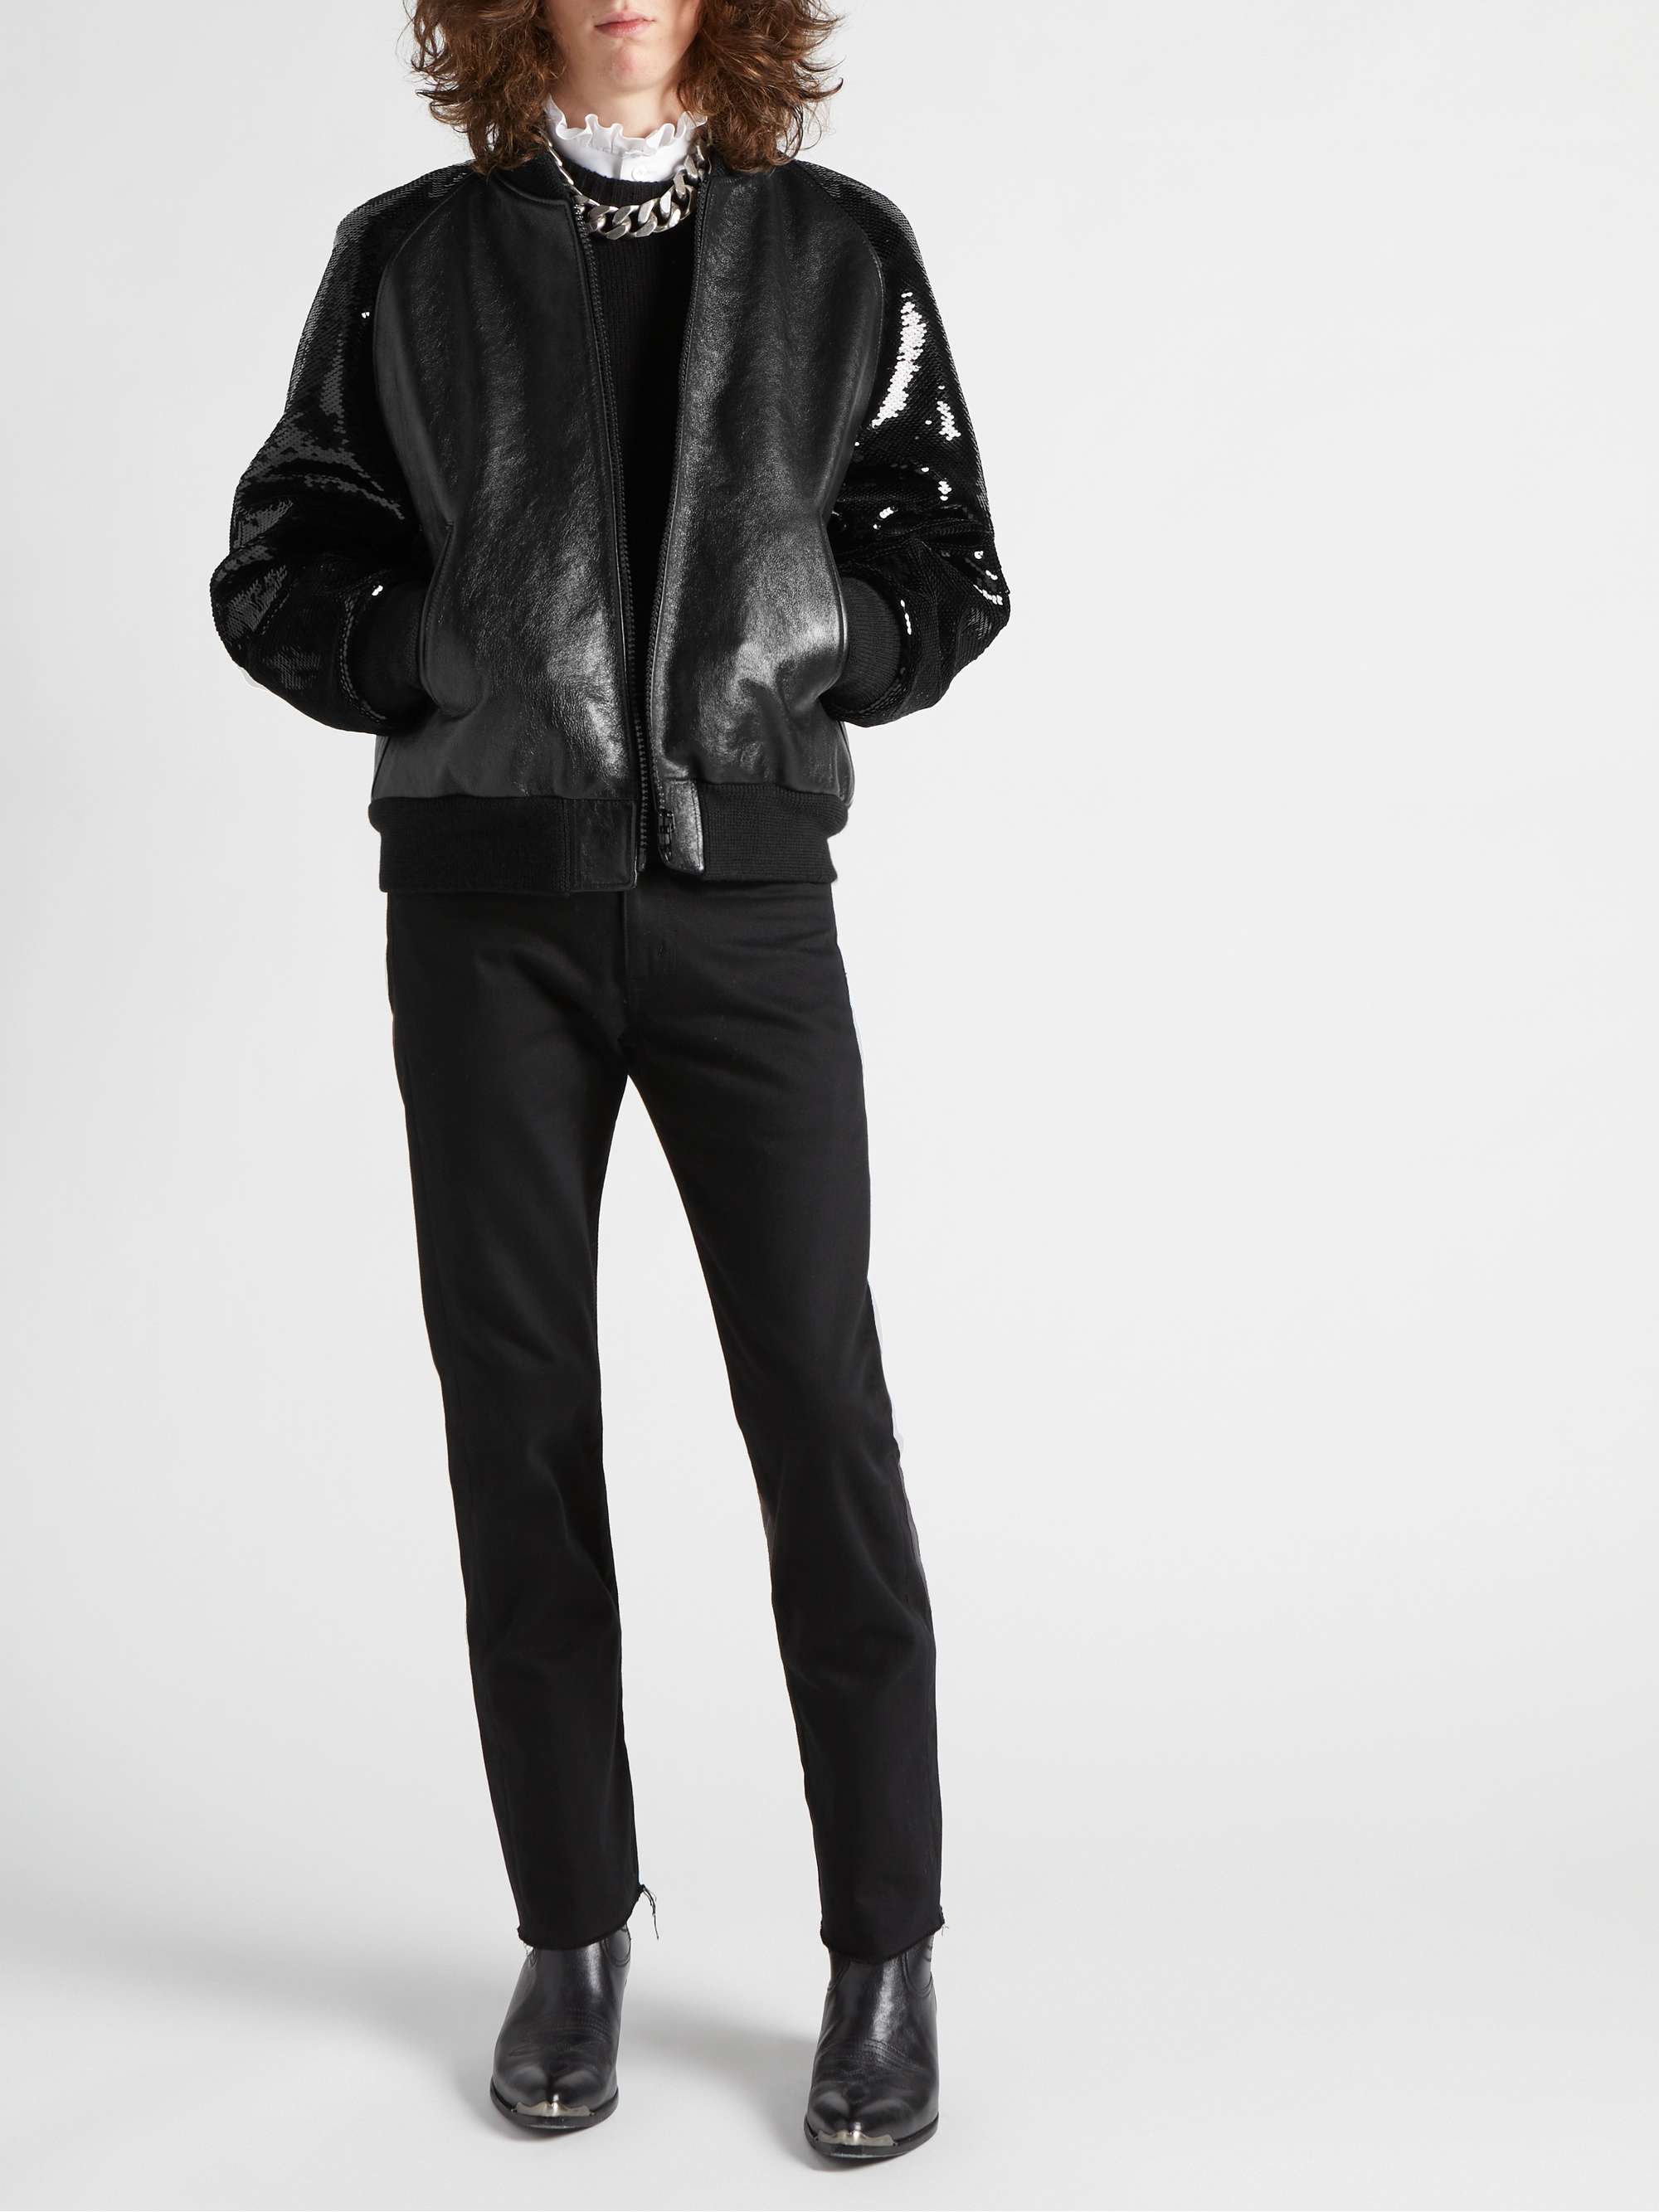 CELINE HOMME Sequin-Embellished Leather Blouson Jacket for Men | MR PORTER